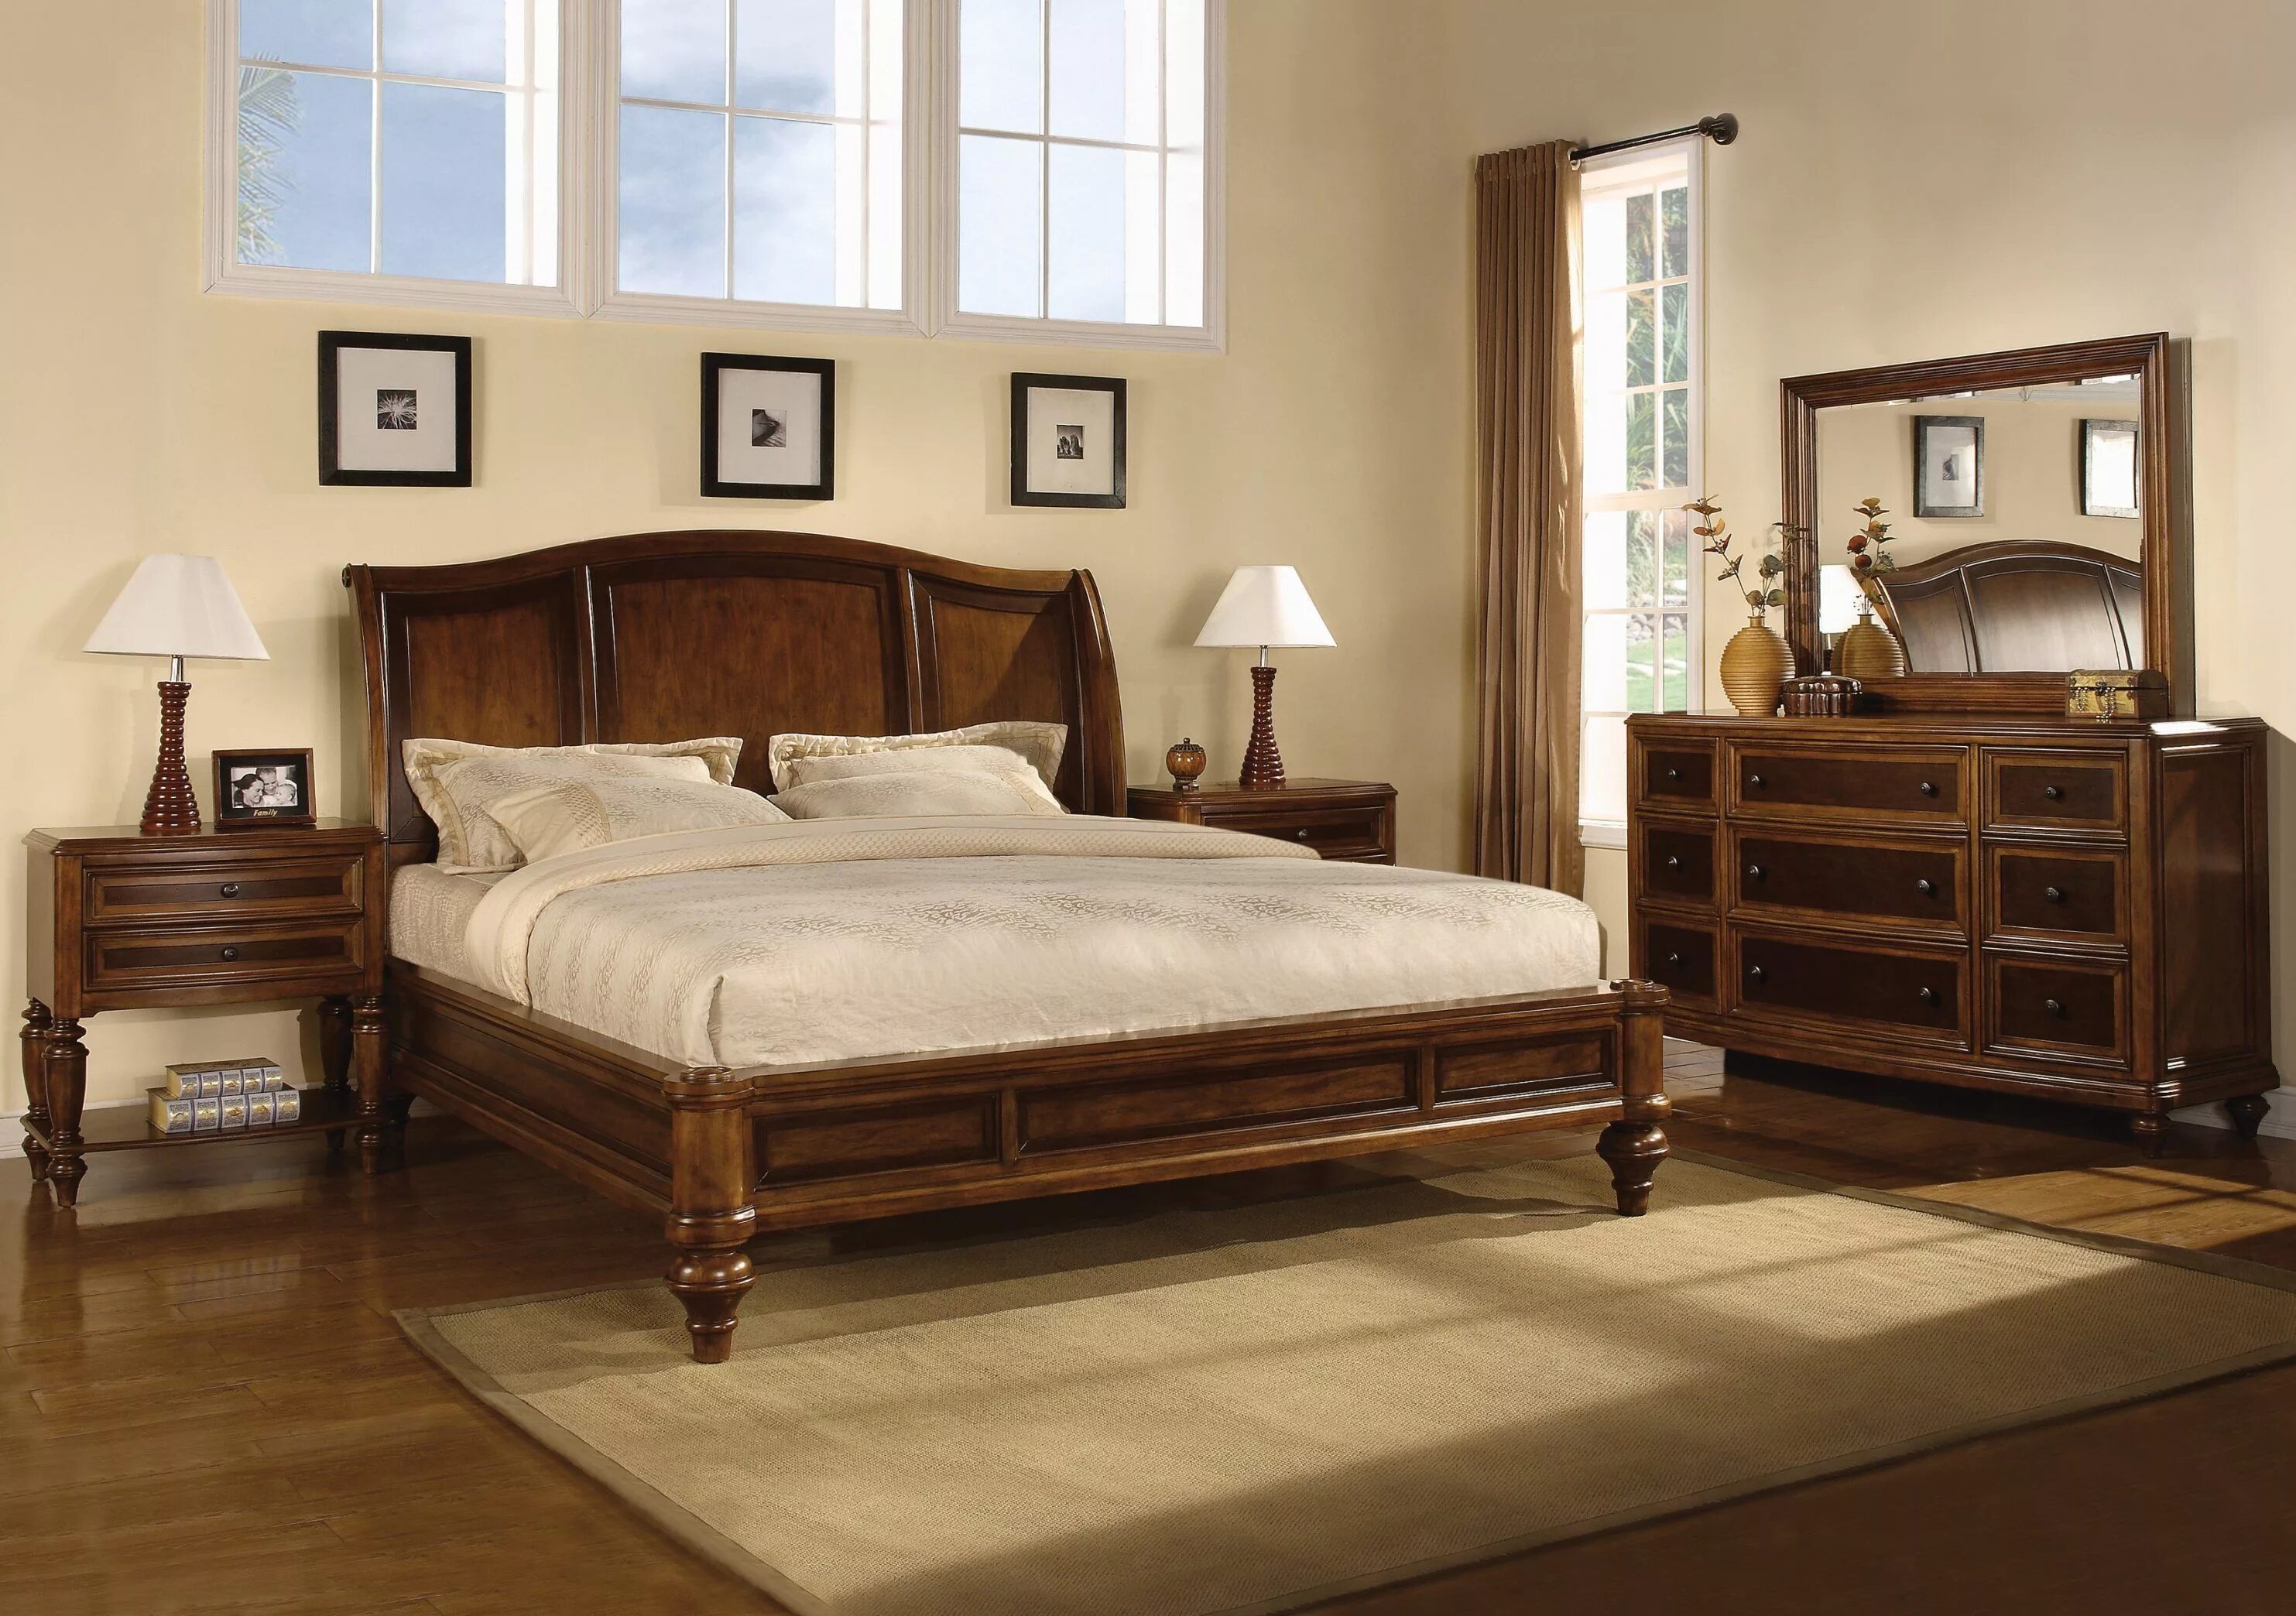 Спальня мебель дерево. Кровать "Паула".массив дуба. Кровати Кинг сайз из массива. Кровать из массива дерева Кинг сайз Америка. Спальня из натурального дерева.